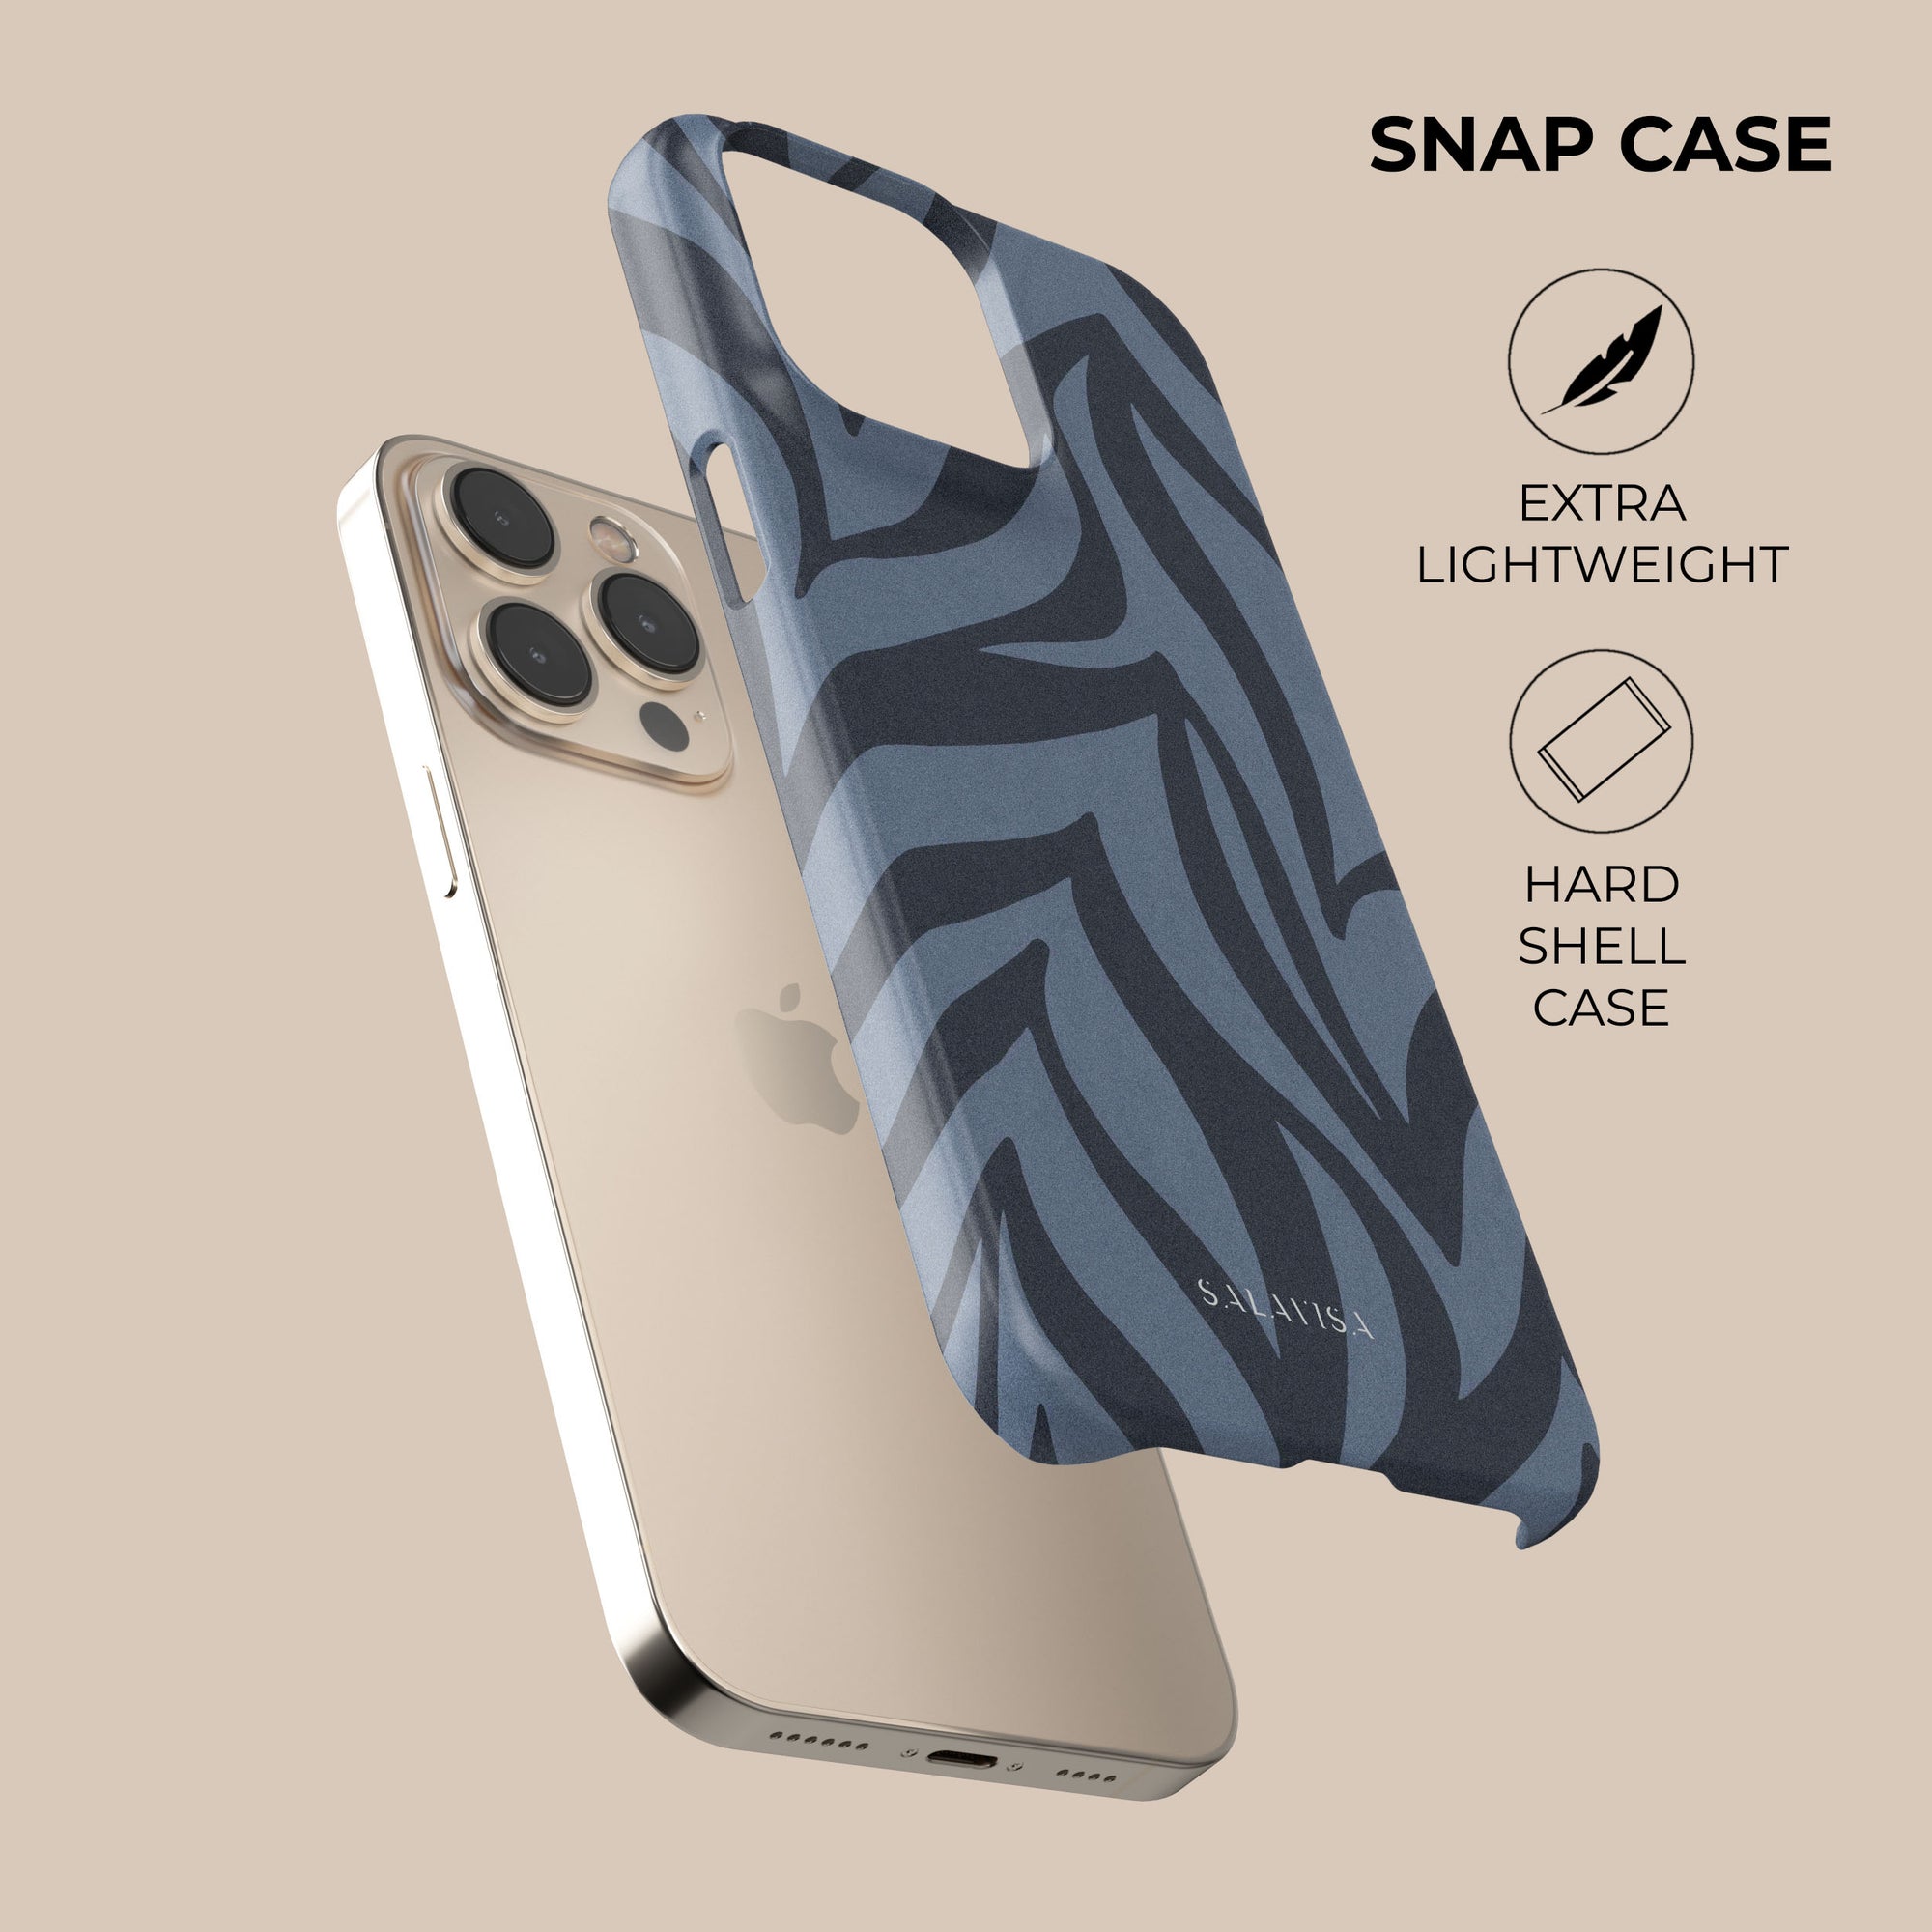 Blue Zebra Phone Case